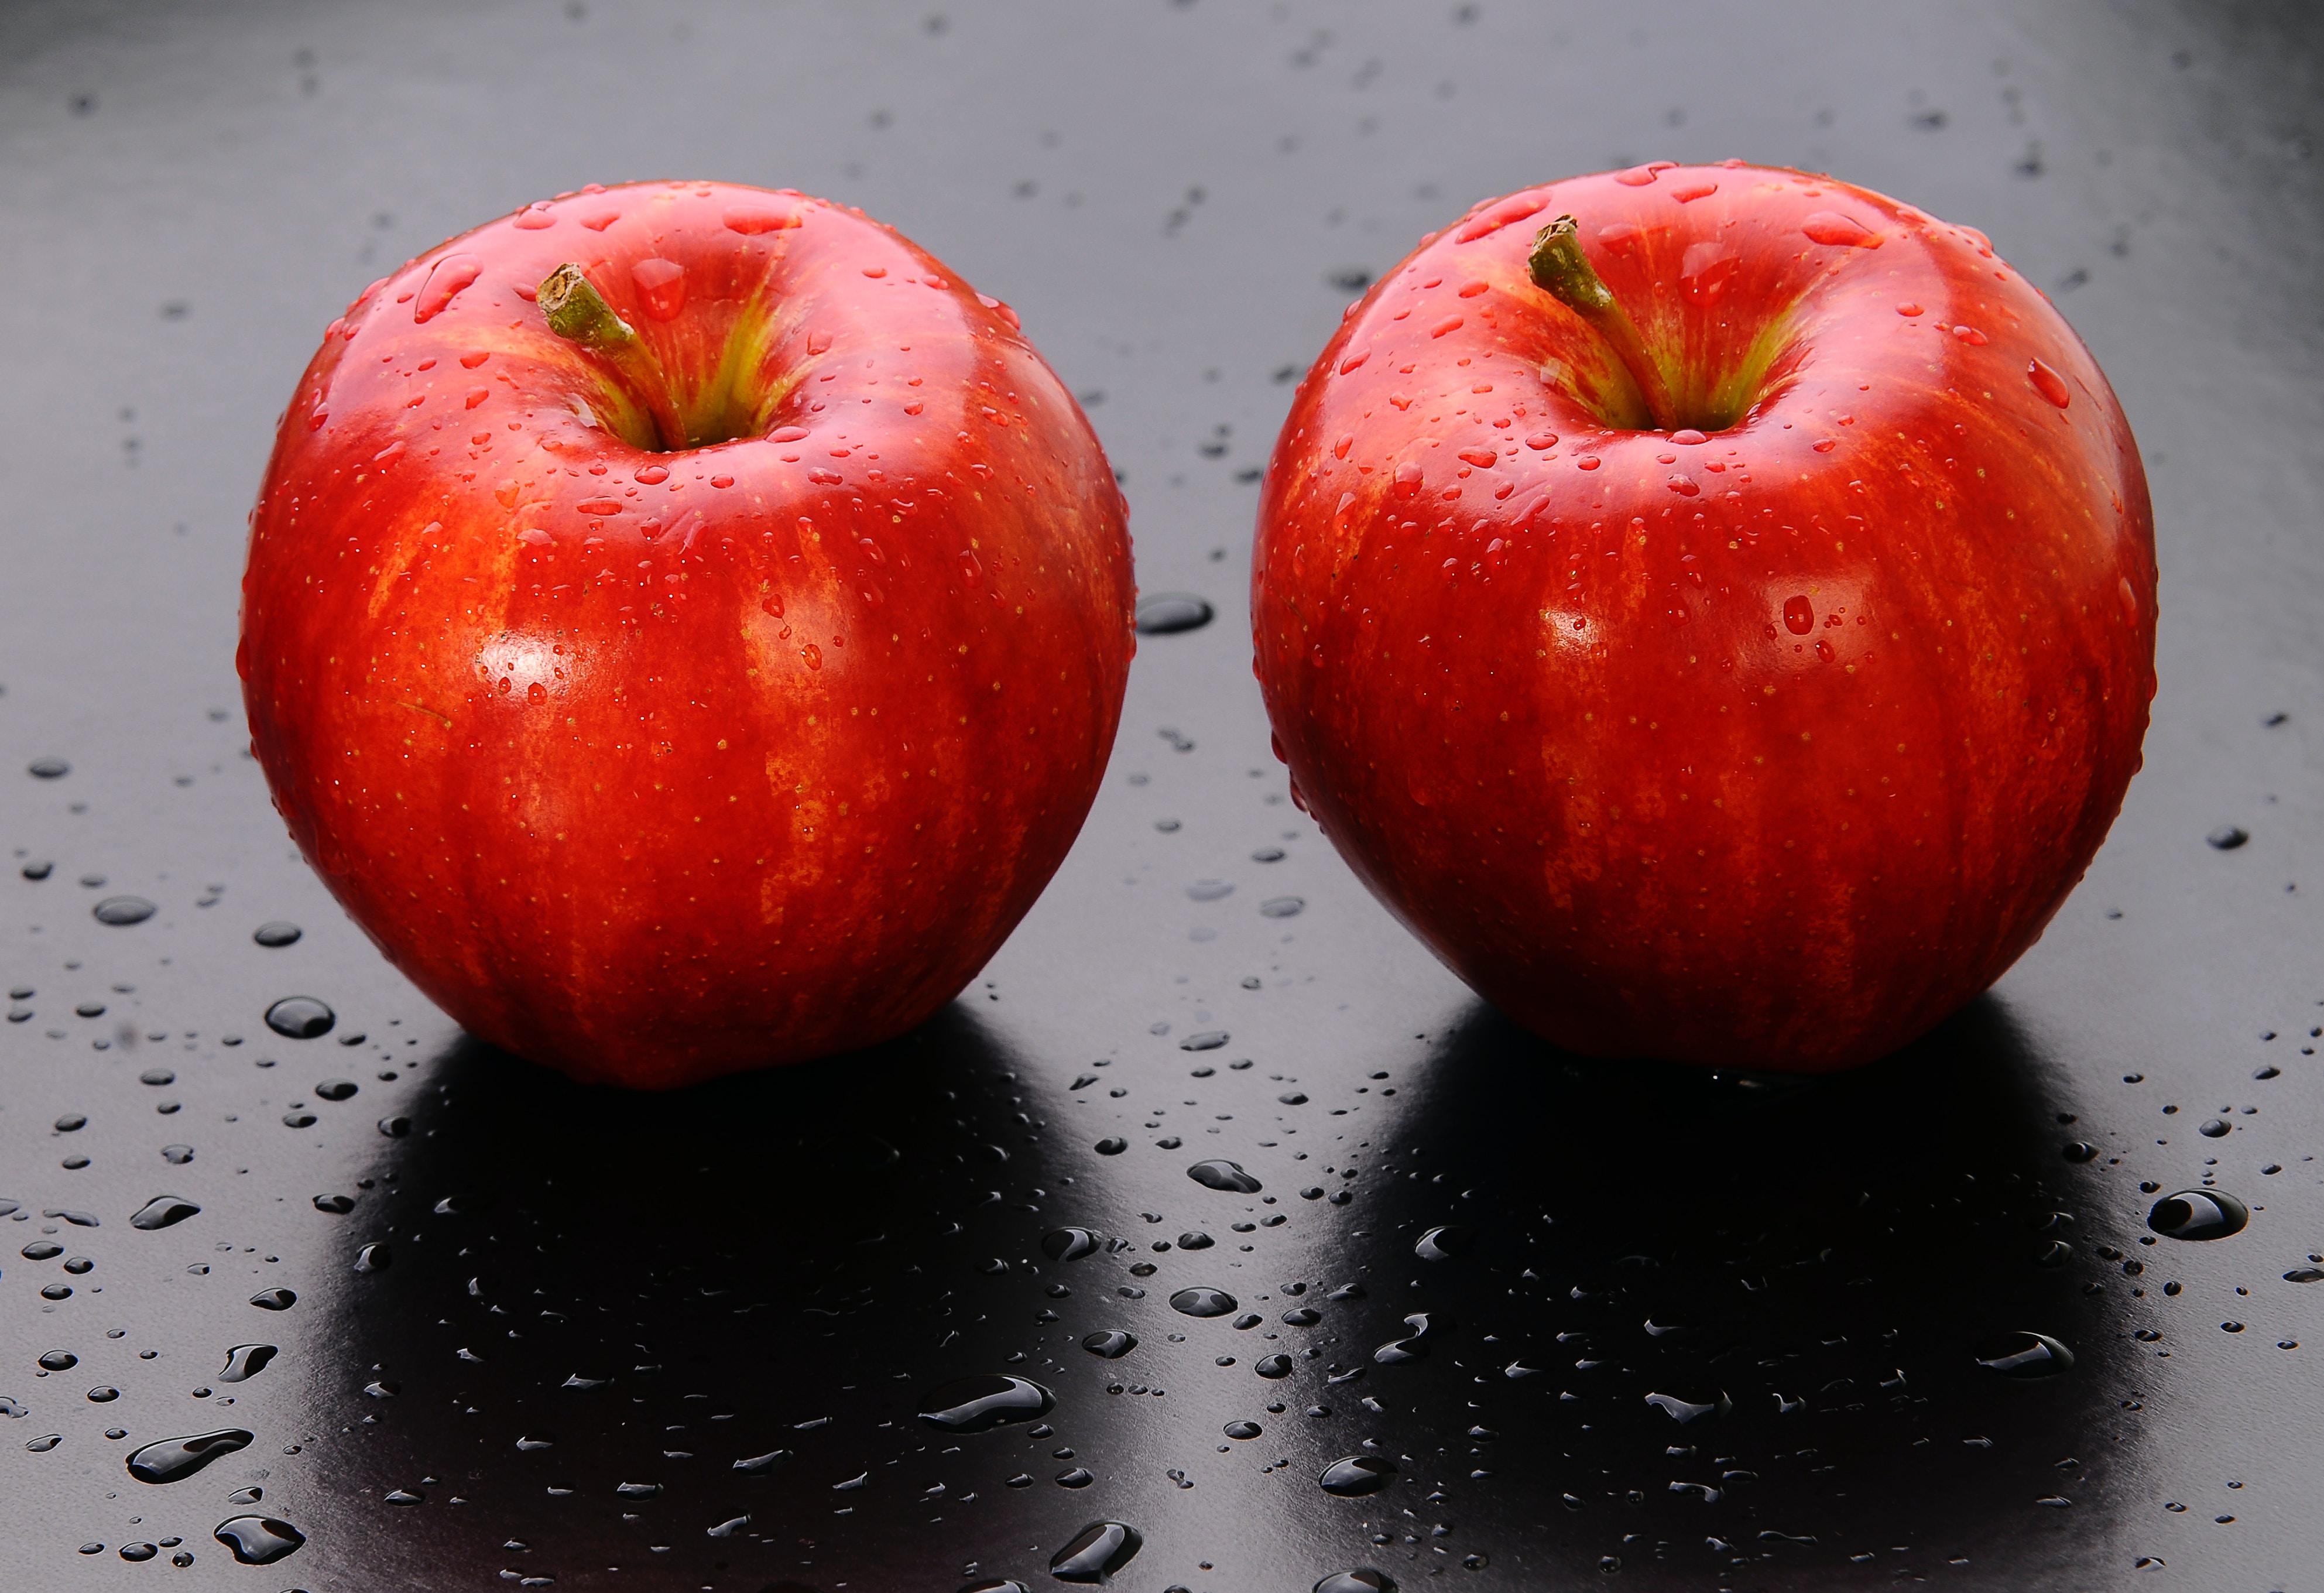 야생에서 채취를 한 사과를 잘 세척한 후에 검은 바닥 위에 빨갛게 잘 익은 사과 2개를 나란히 놓고 찍은 사진